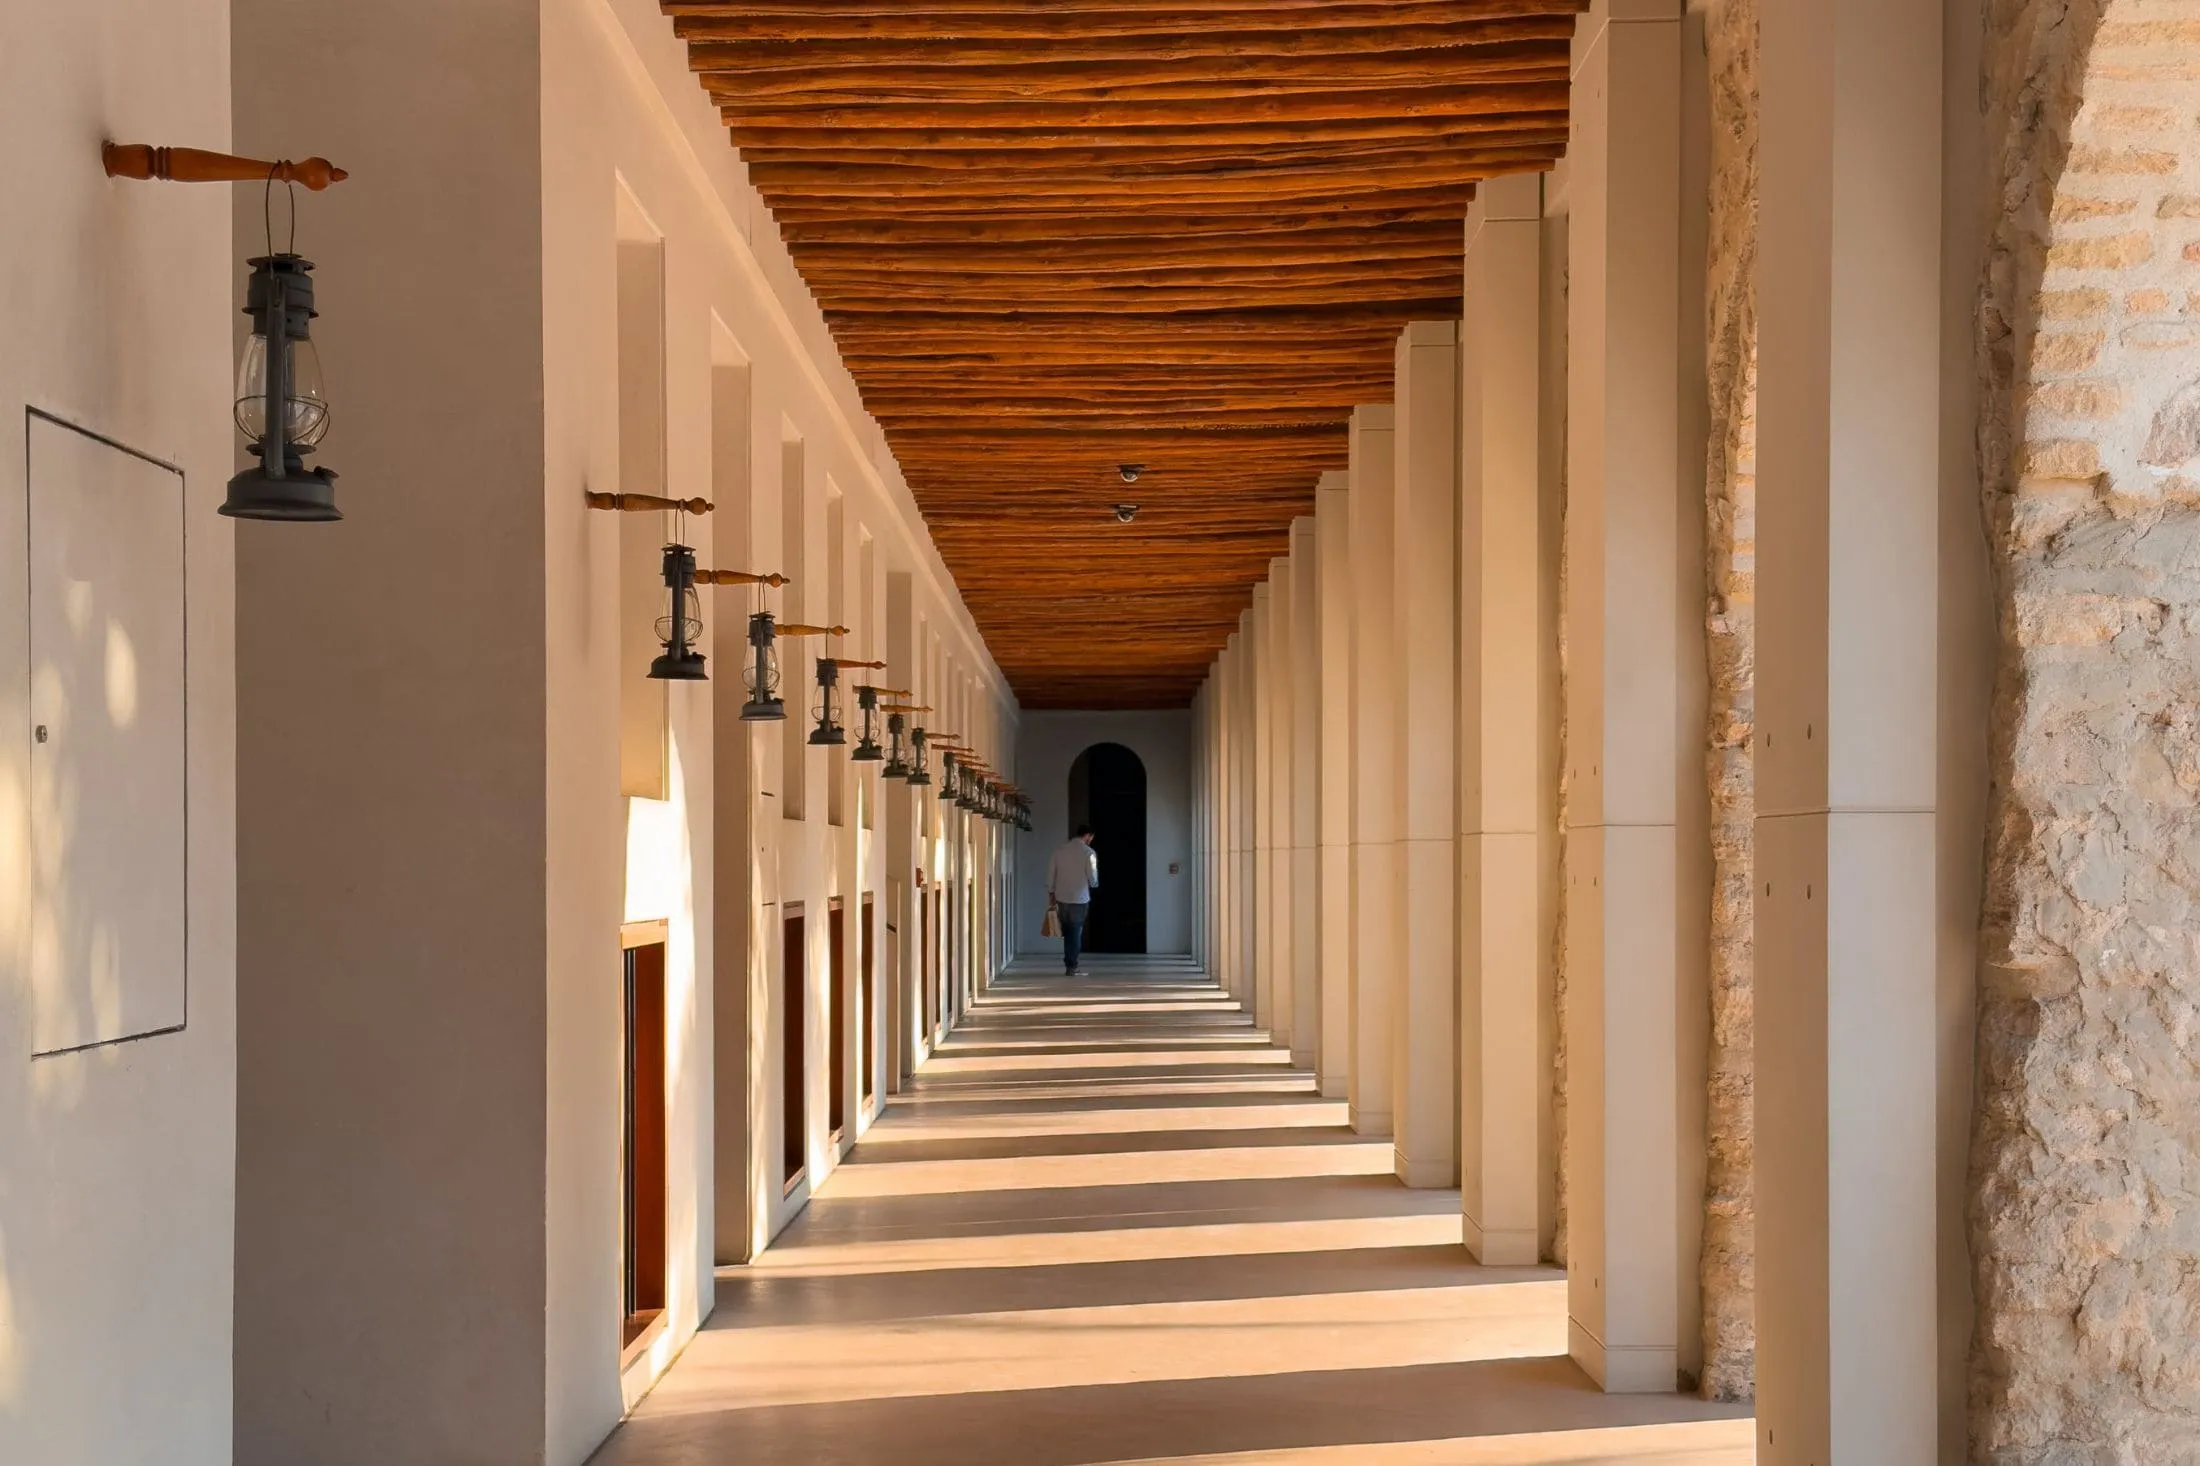 Unique architecture style with long hallways, Qasr Al Hosn in Abu Dhabi